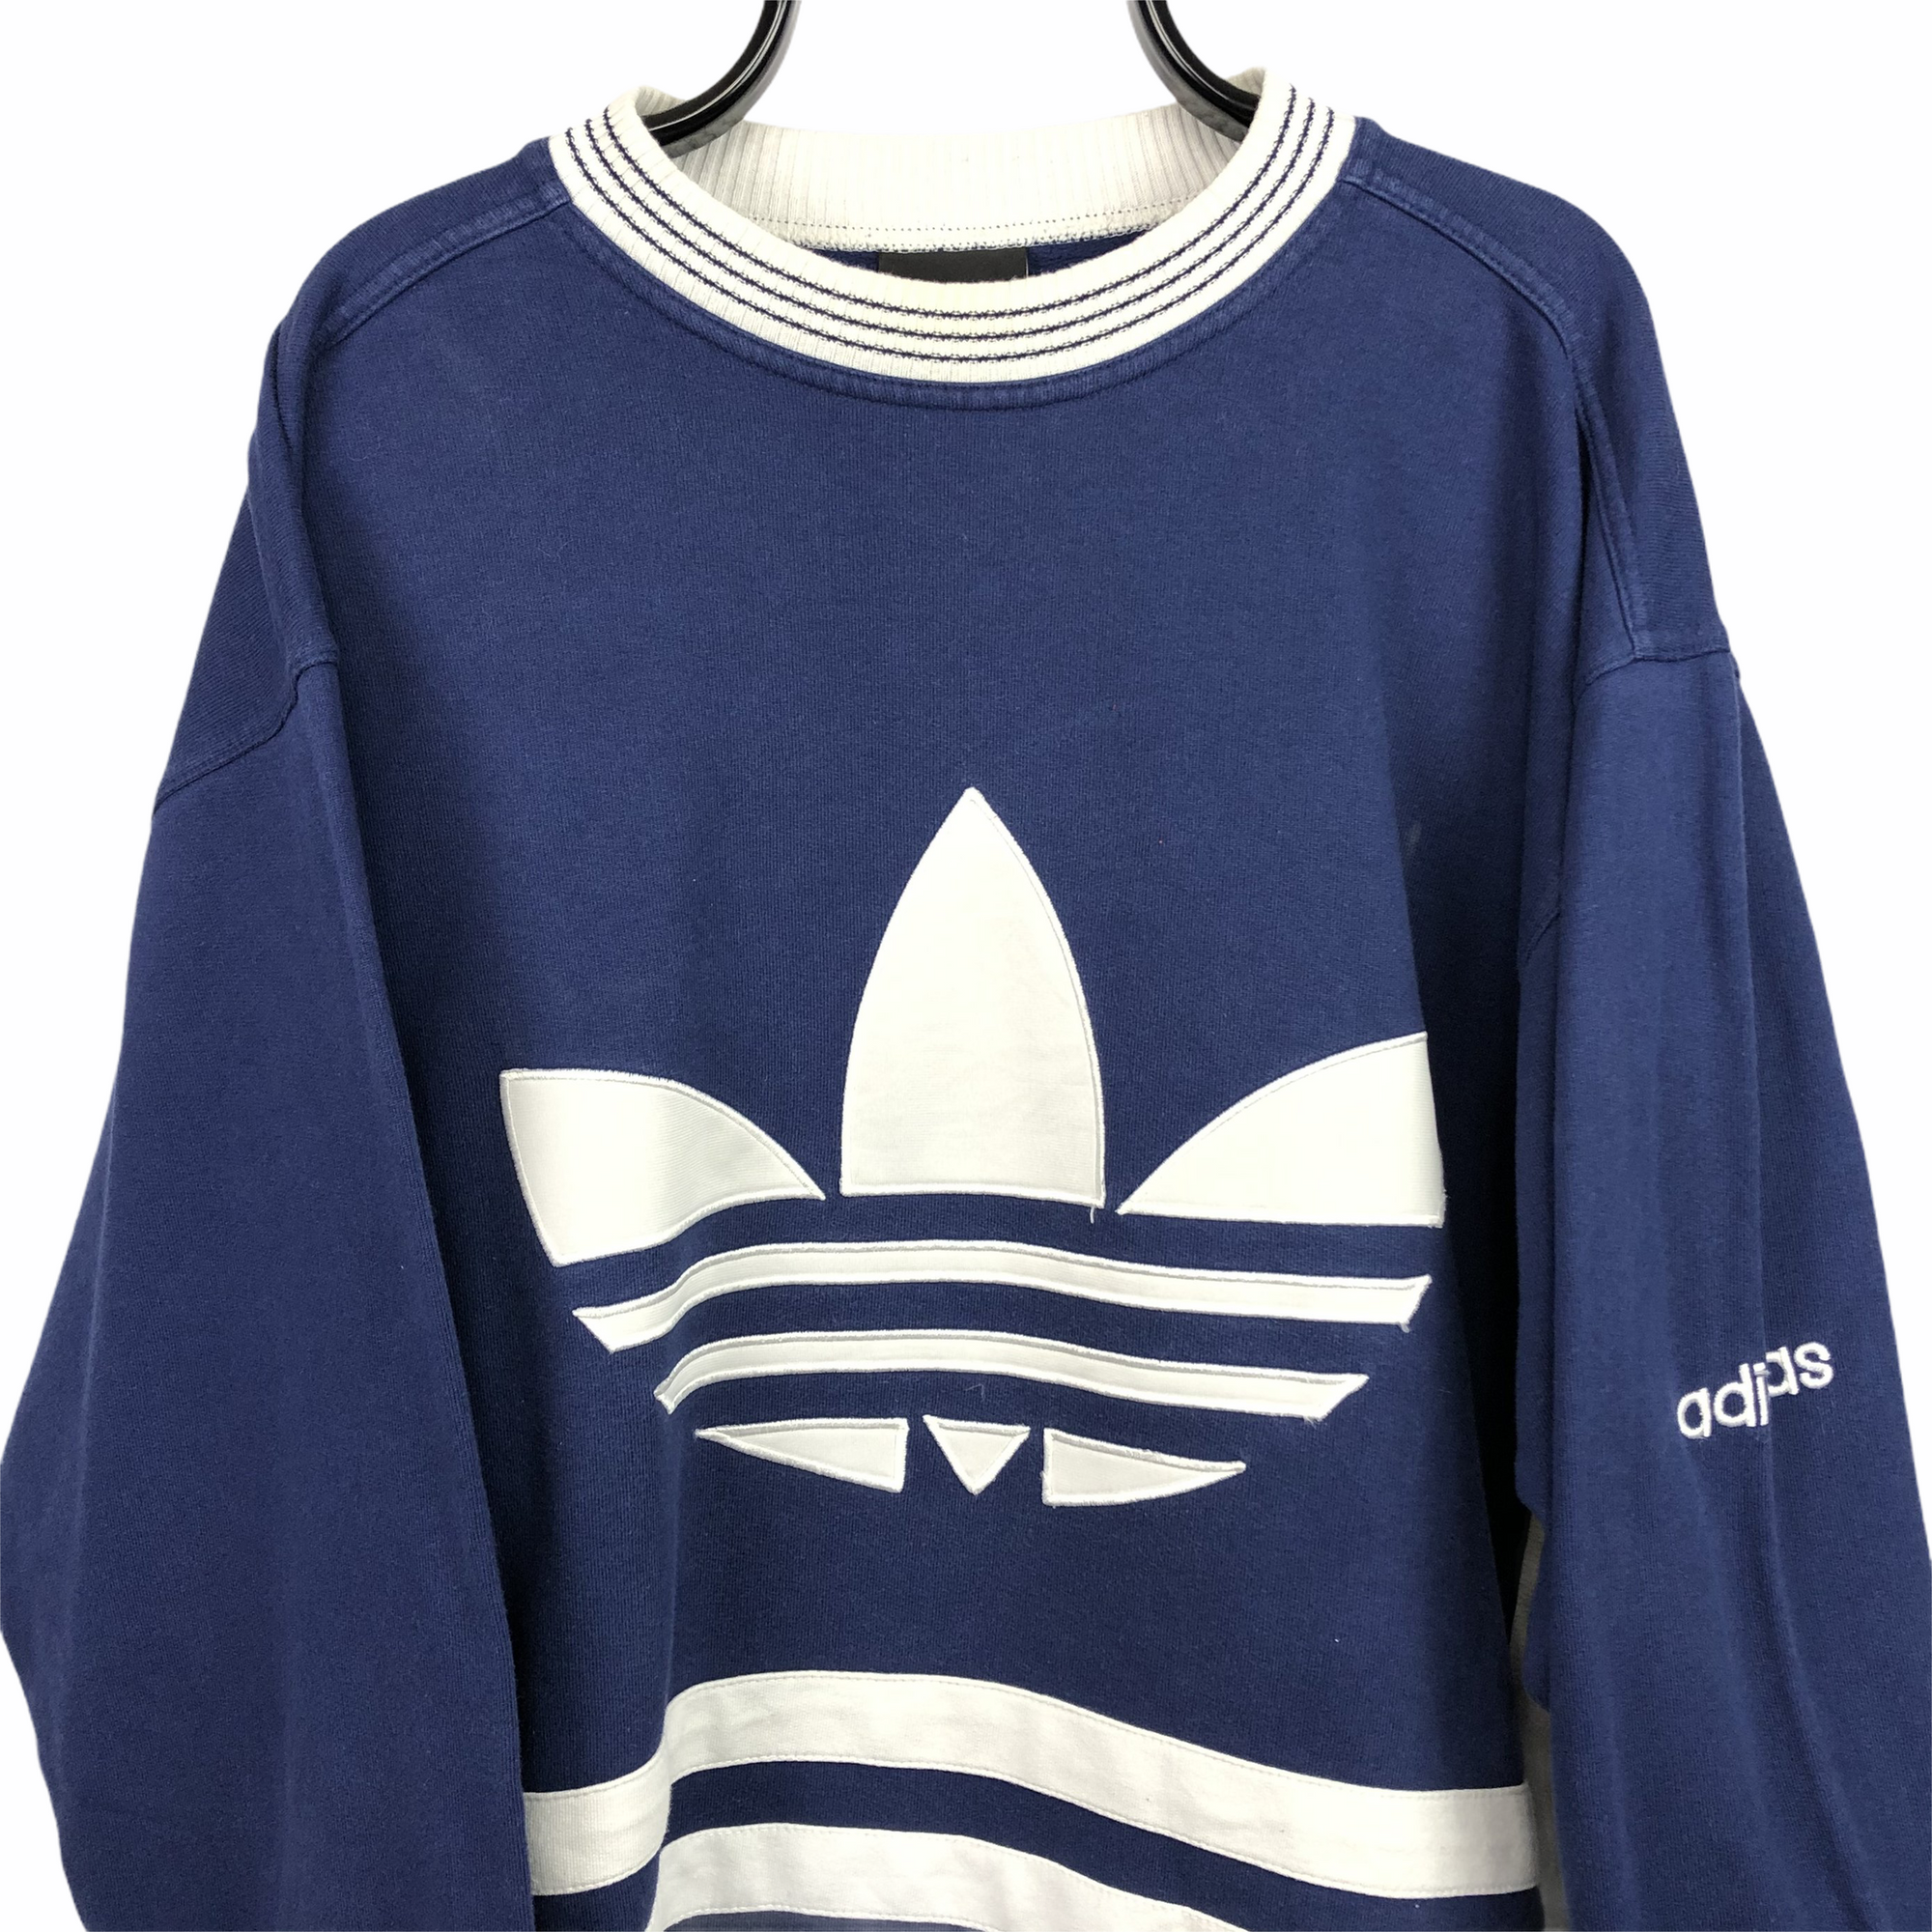 Vintage 90s Adidas Big Logo Sweatshirt in Navy/White - Men's XL/Women's XXL